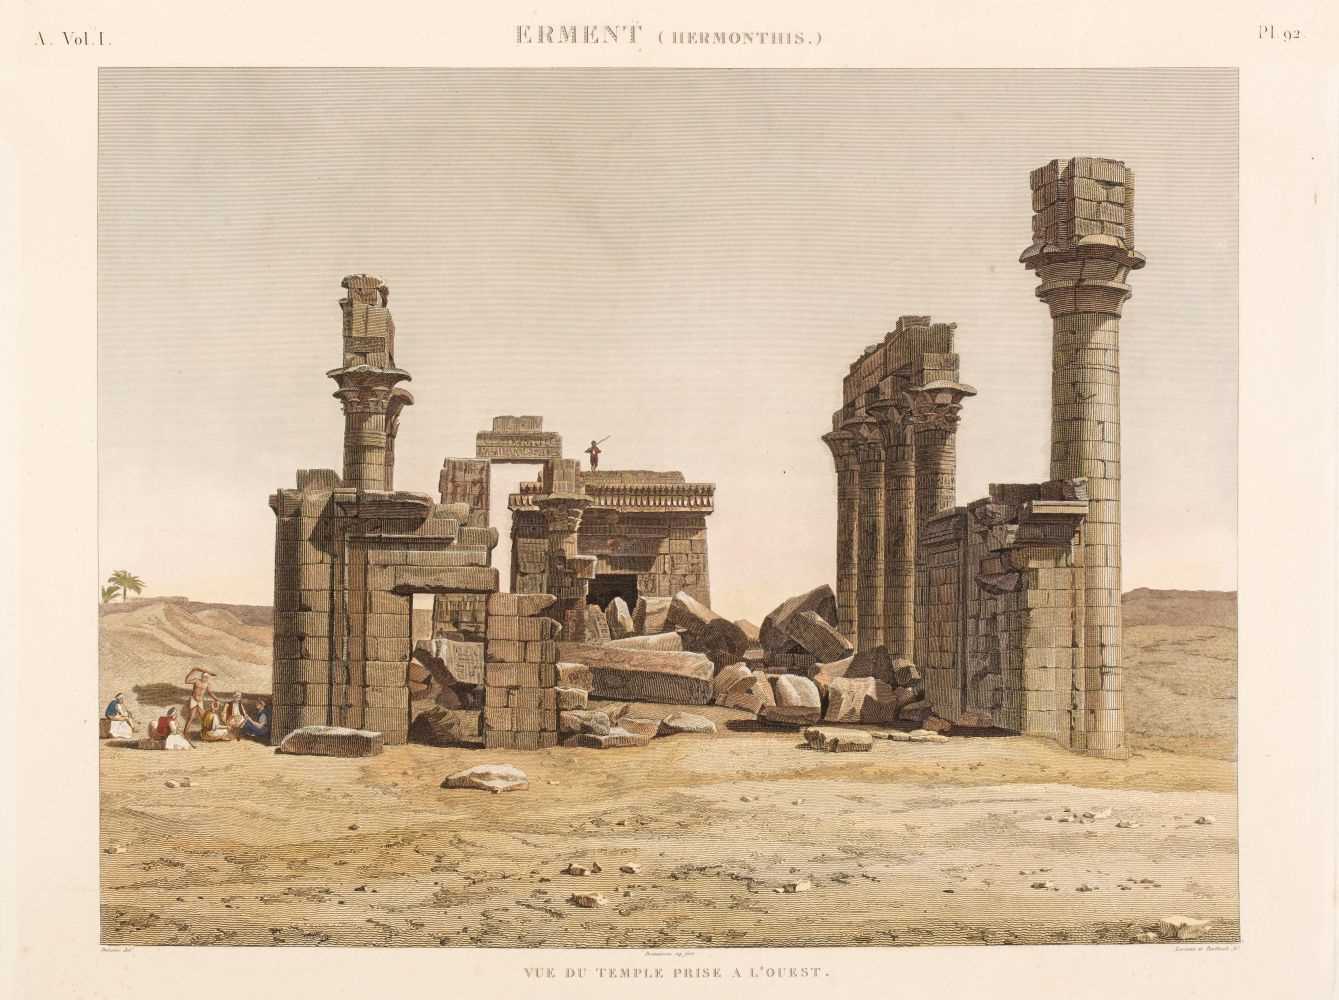 Lot 10 - Egypt. 10 views on 8 sheets from Description de l'Egypt, 1809-22.